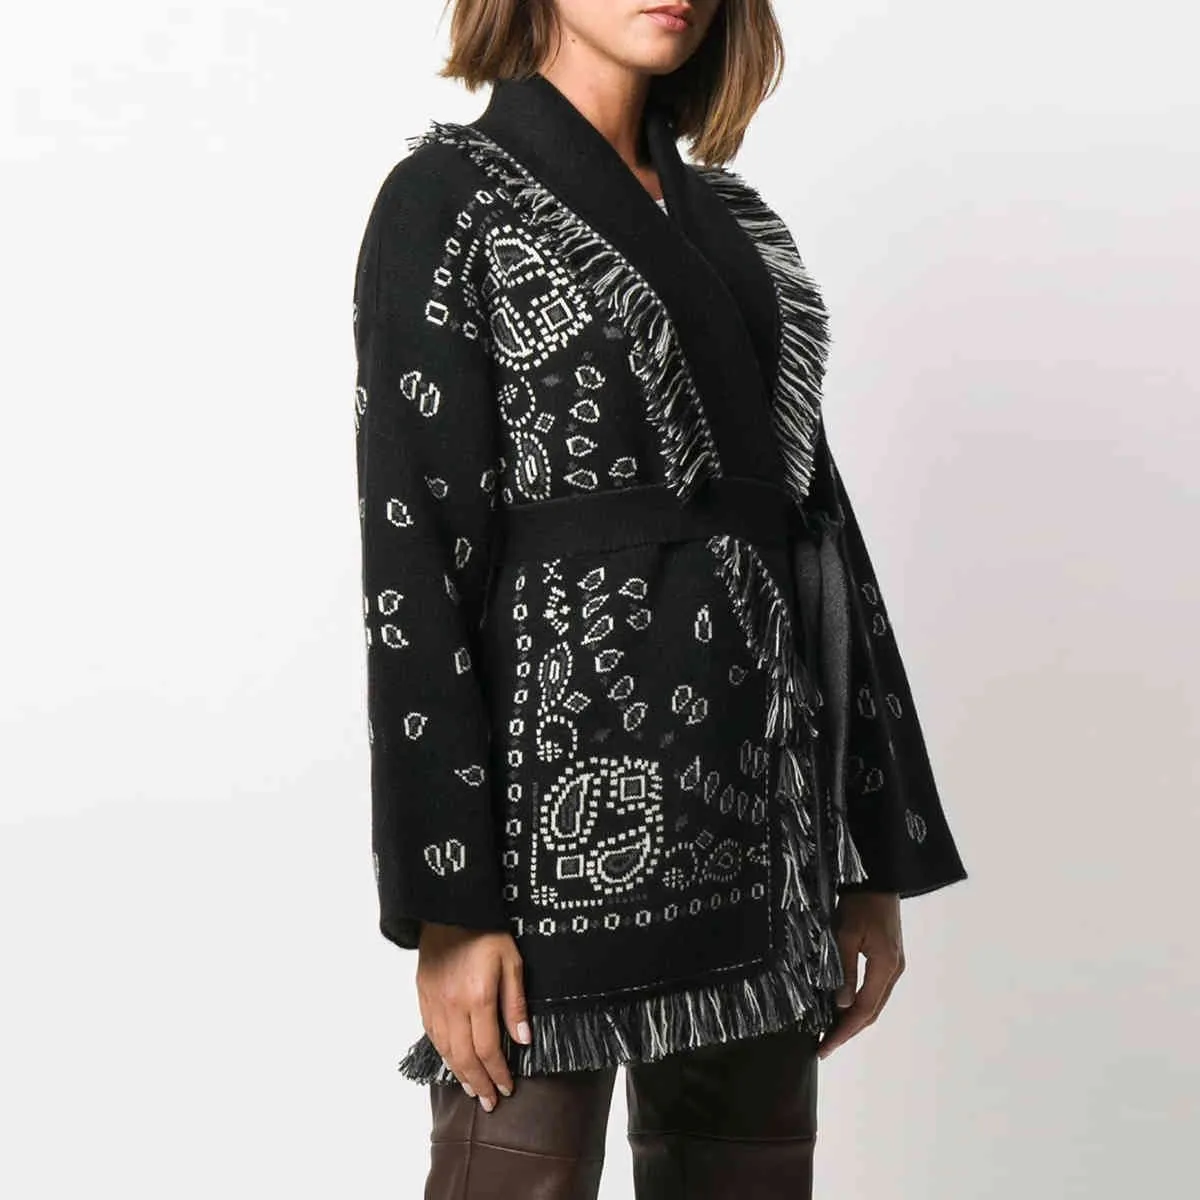 Jastie 새로운 가을 겨울 캐시미어 카디건 프린드 V 넥 넥타이 허리 긴 소매 스웨터 여성 니트웨어 따뜻한 두꺼운 오버 코트 210419